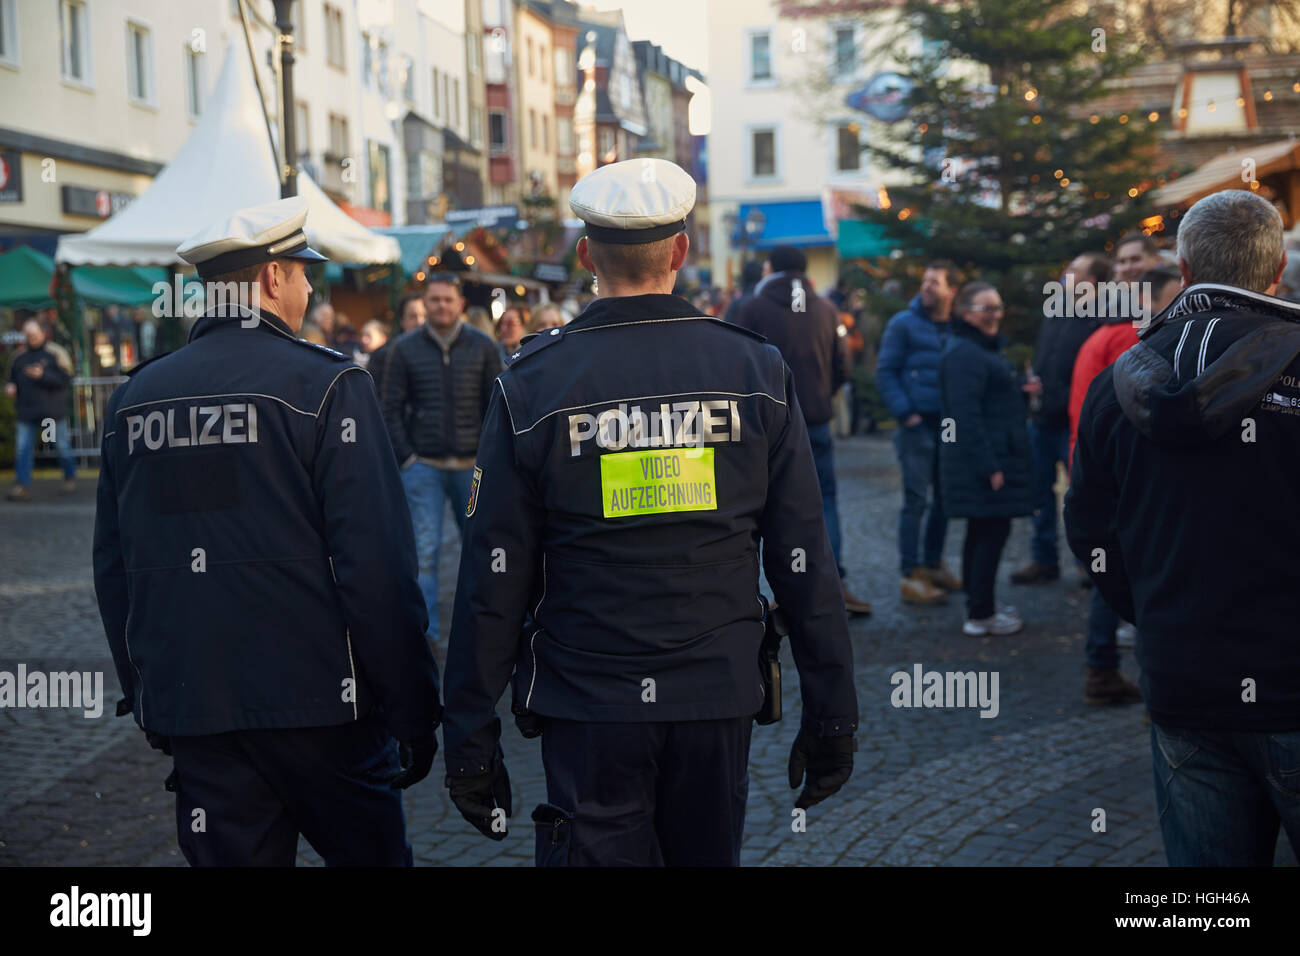 Polizisten, Videoaufzeichnung, Weihnachtsmarkt, historischen Zentrum, Koblenz, Rheinland-Pfalz, Deutschland Stockfoto